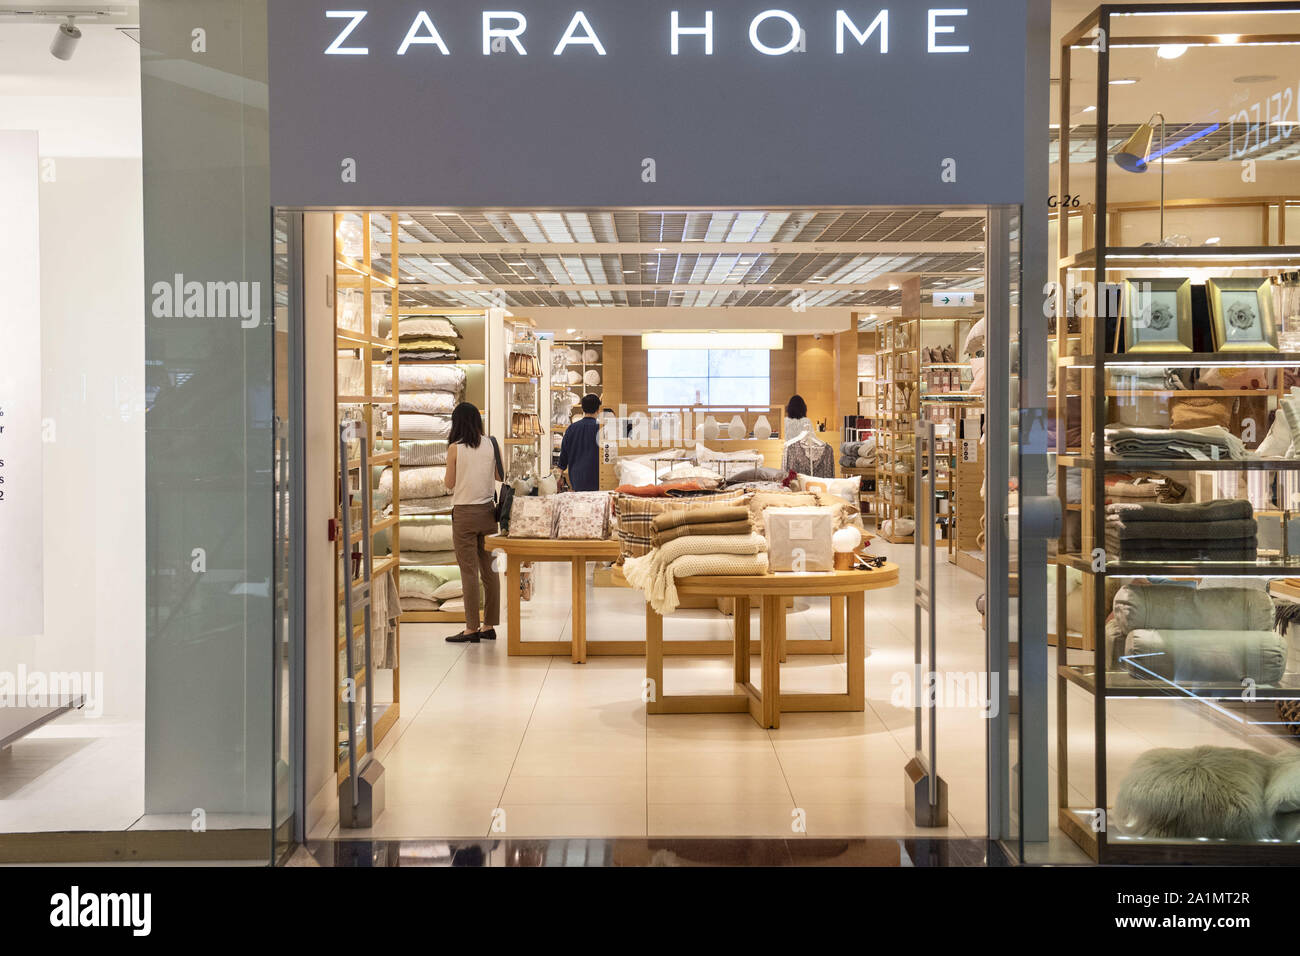 Zara home store -Fotos und -Bildmaterial in hoher Auflösung – Alamy